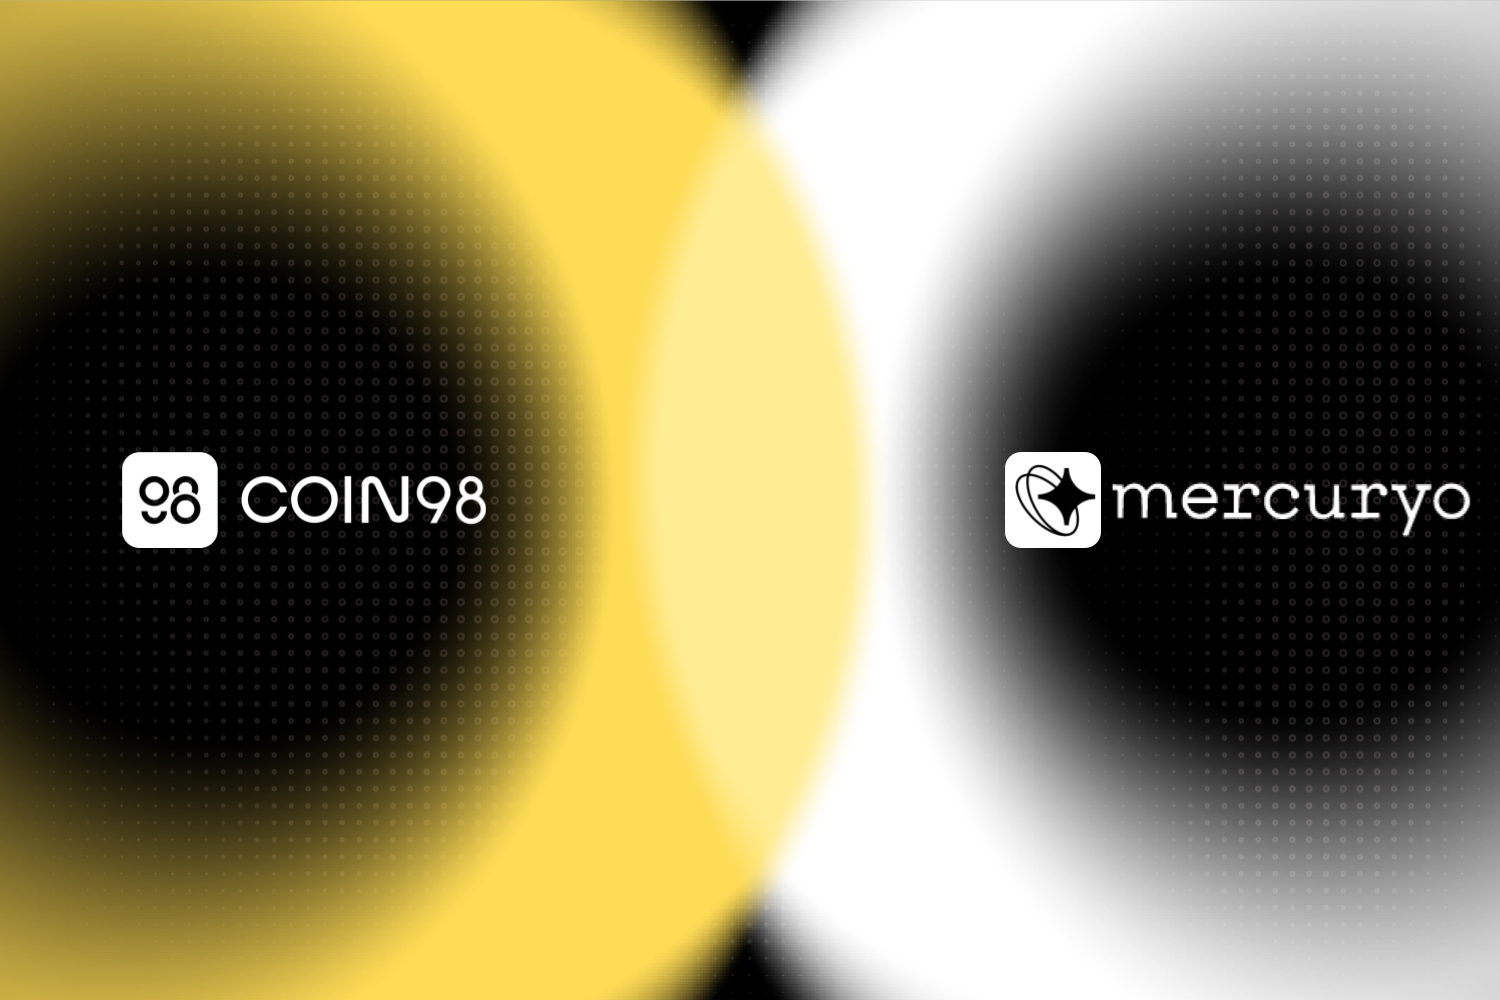 Coin98 integrates Mercuryo